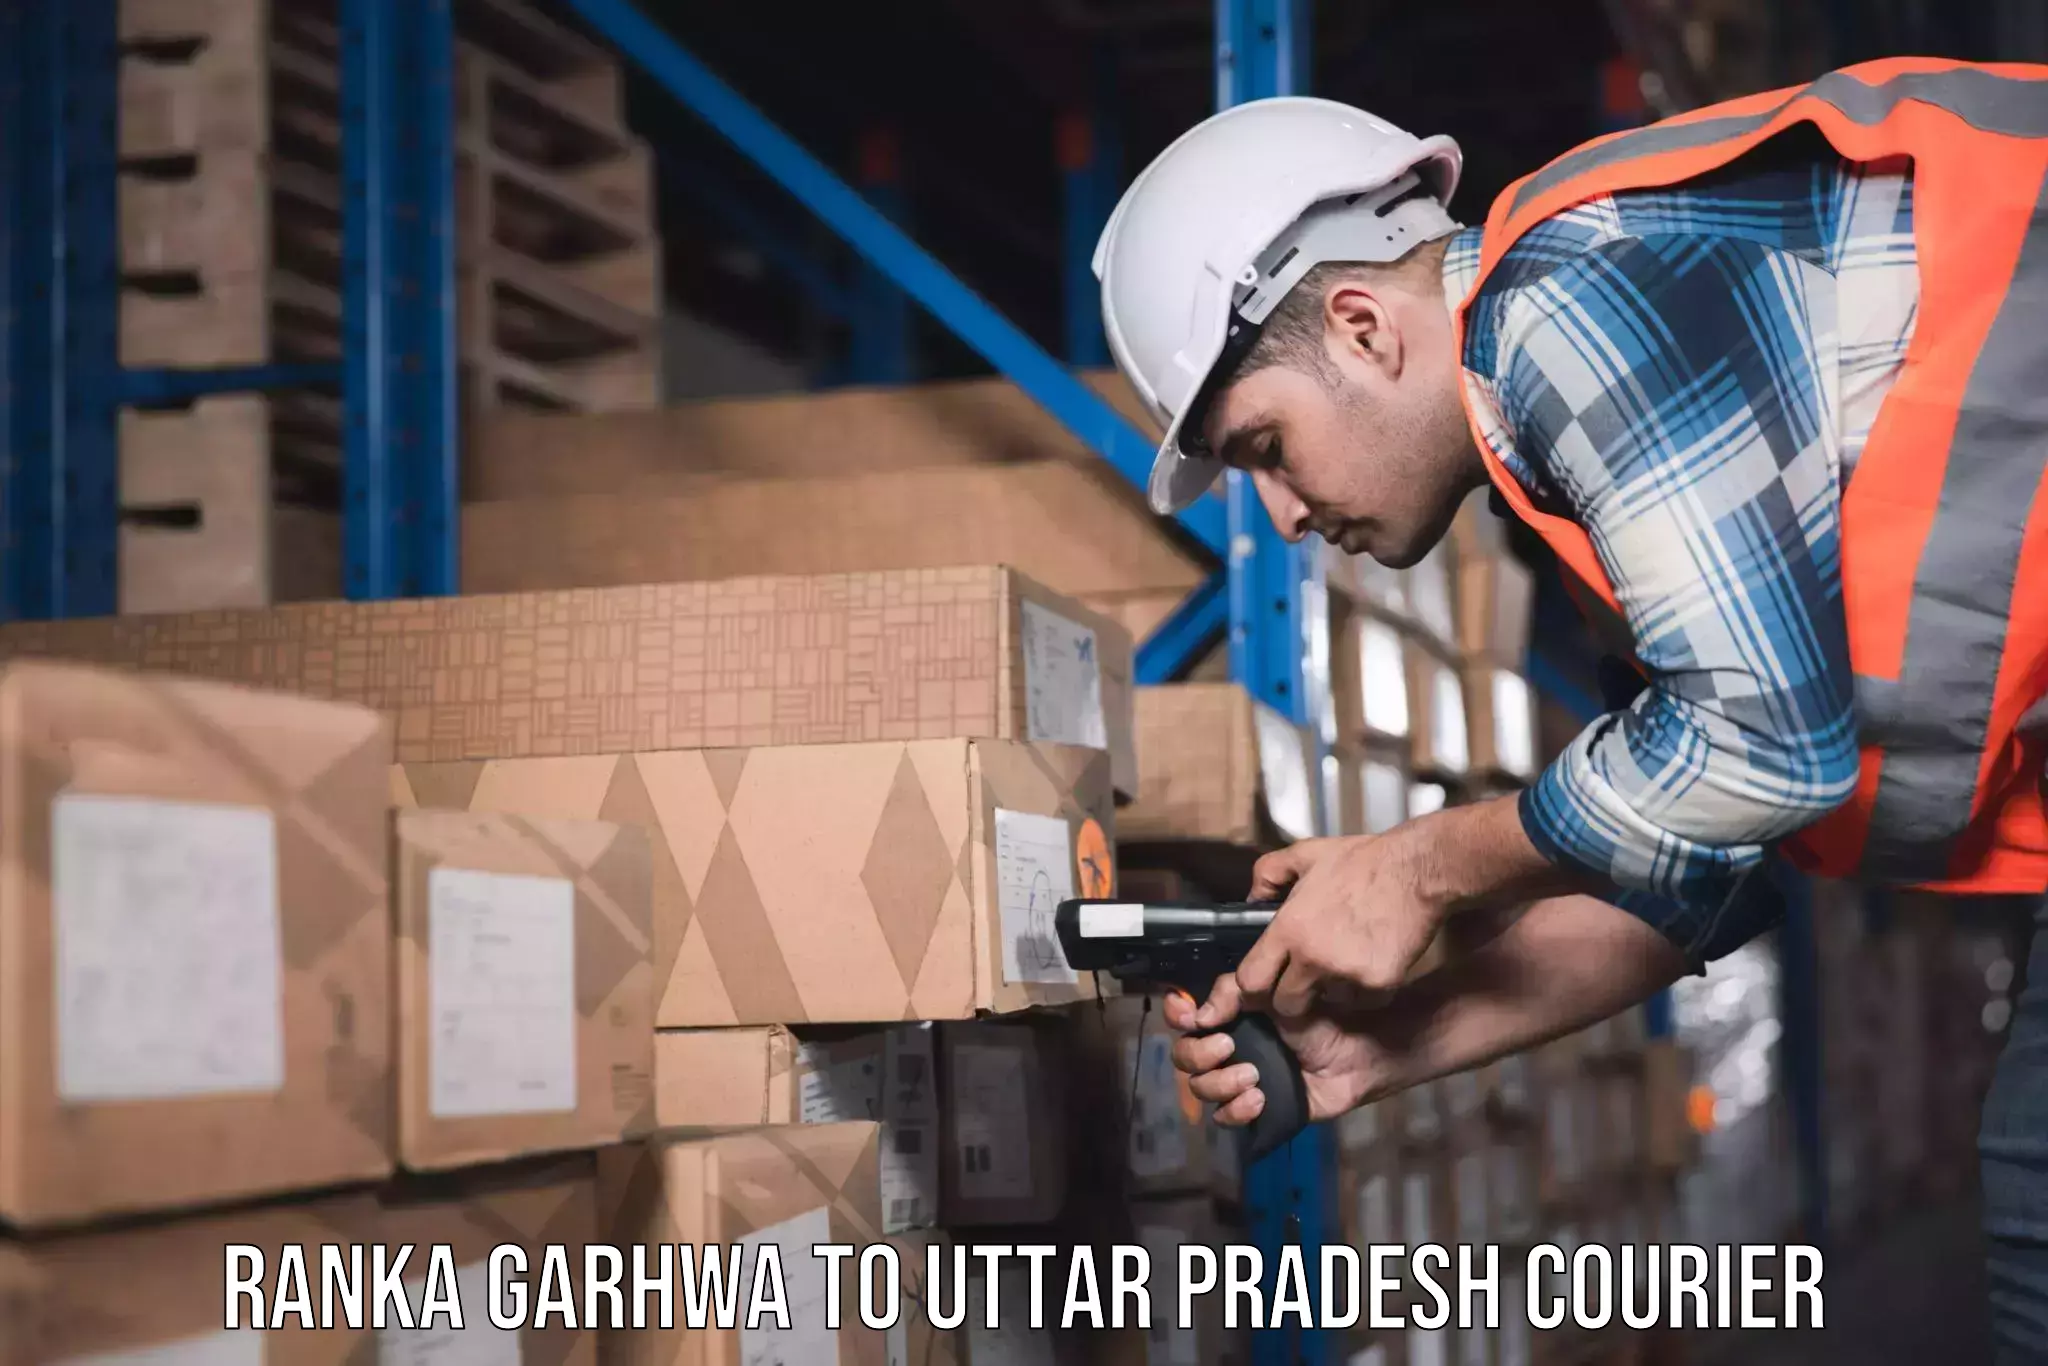 Expert goods movers Ranka Garhwa to Uttar Pradesh